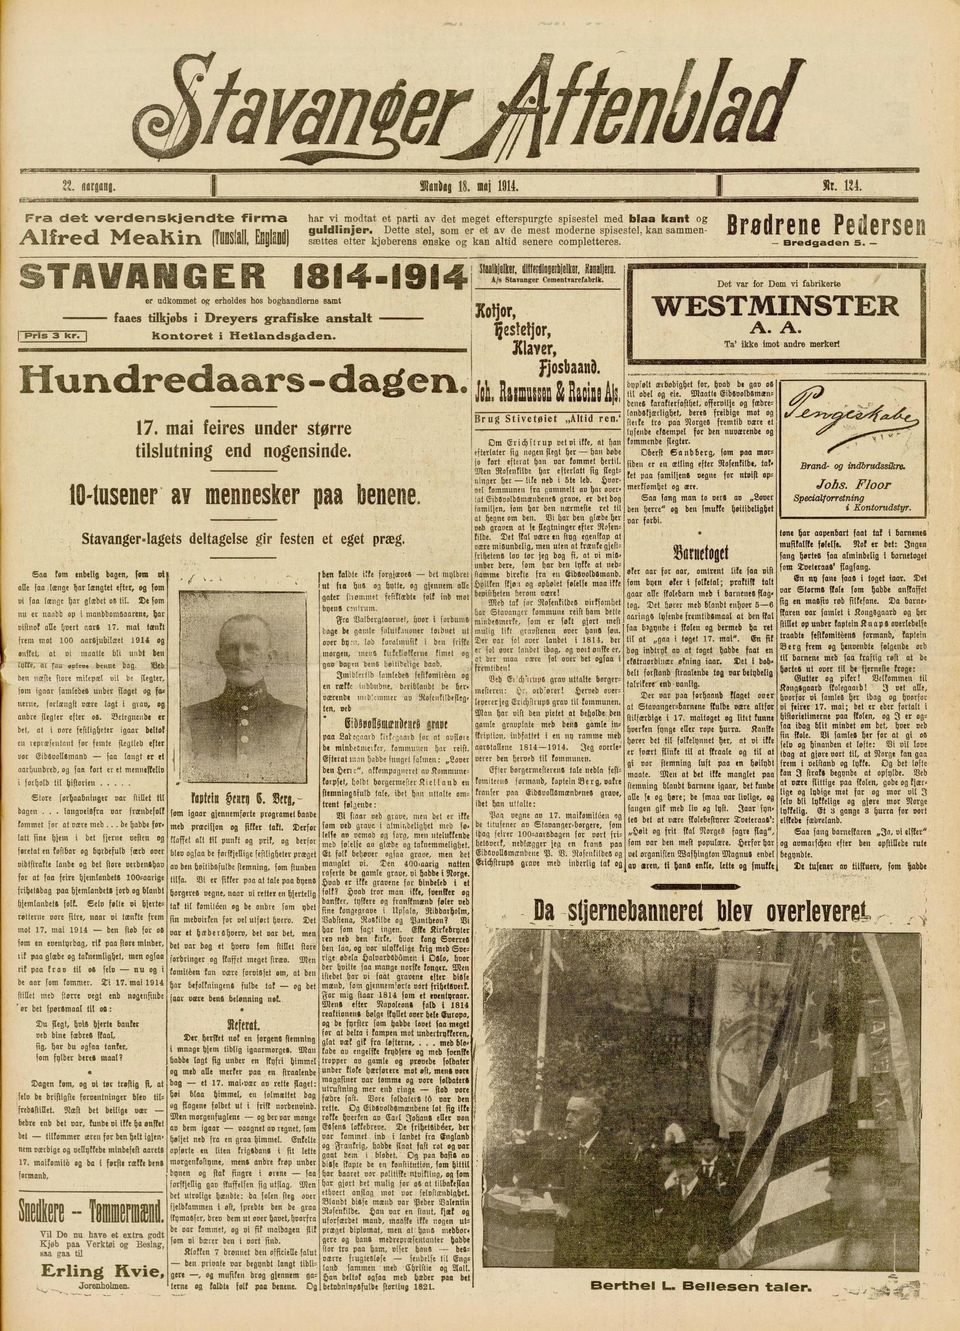 STAVANGER 1894-1914 Shaltielker, A/s Stavanger Cementrarcfaforik. Pris 3 l^s. er udkommet og erholdes boghandlerne samt faaes tilkjøbs i Dreyers grafiske anstalt kontoret i Hetlandsgaden.